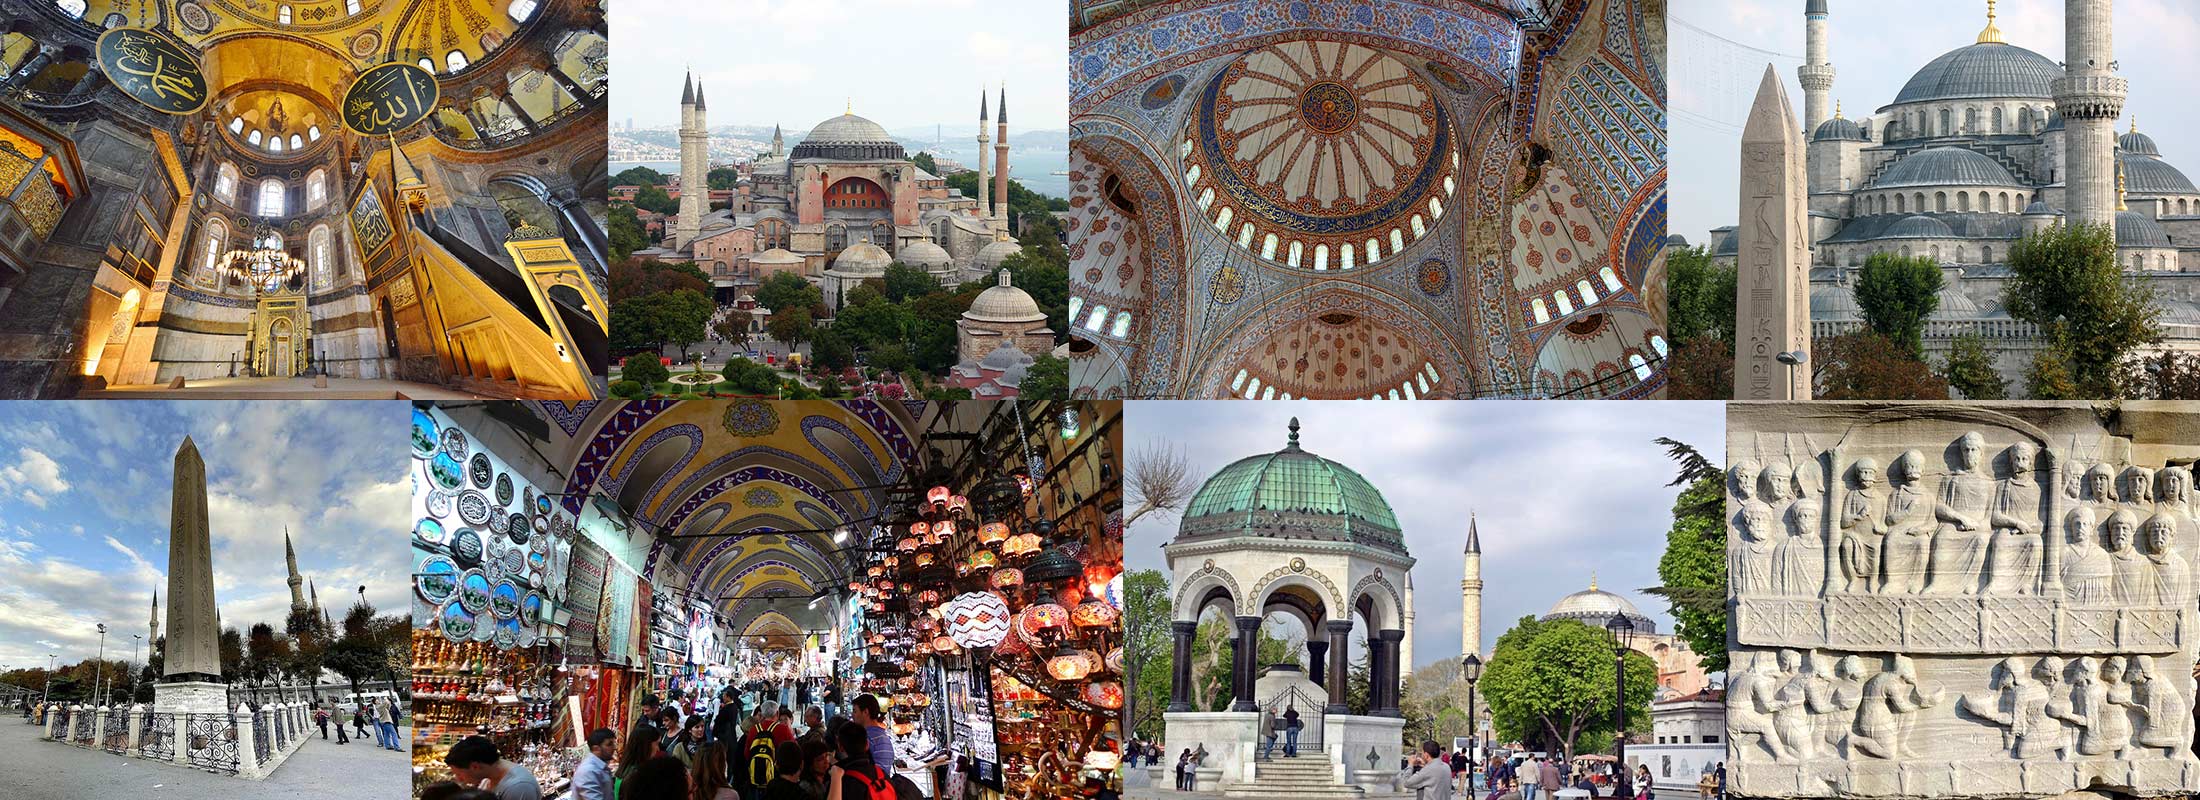 half-day-istanbul-tour-blue-mosque-hagia-sophia-museum